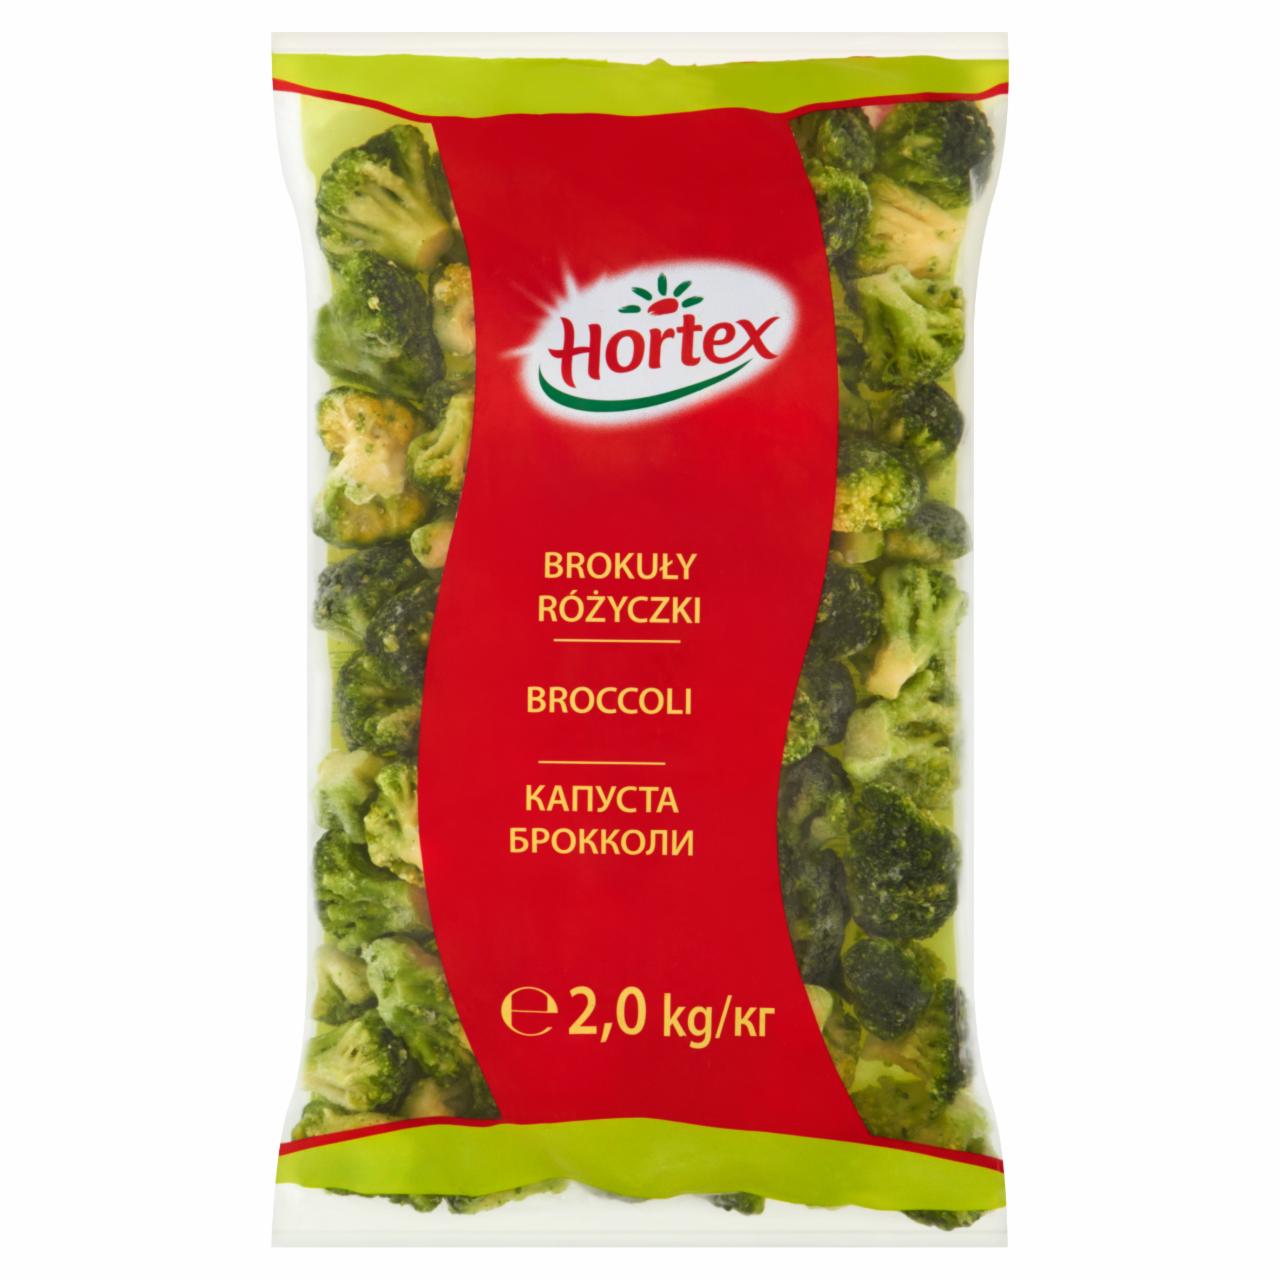 Zdjęcia - Hortex Brokuły różyczki 2,0 kg